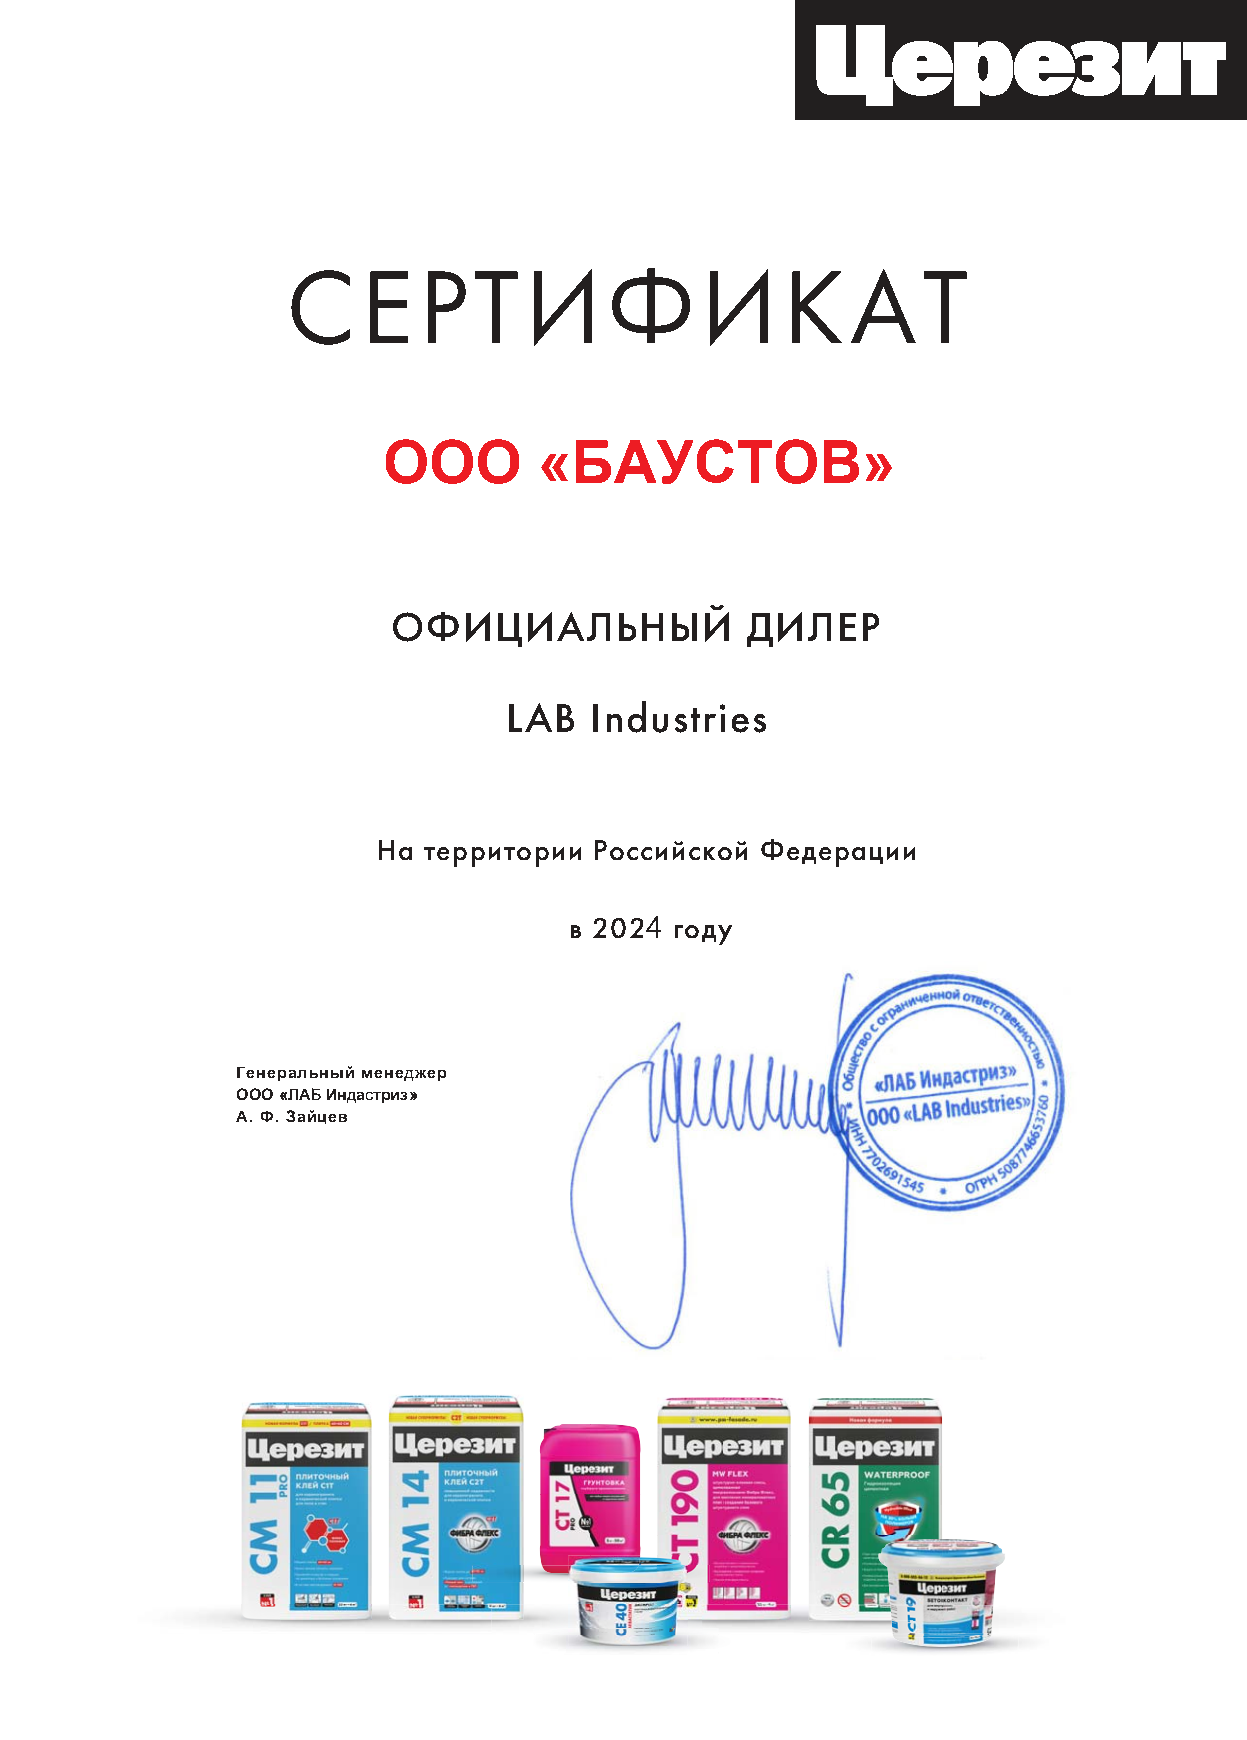 сертификат дилера Церезит